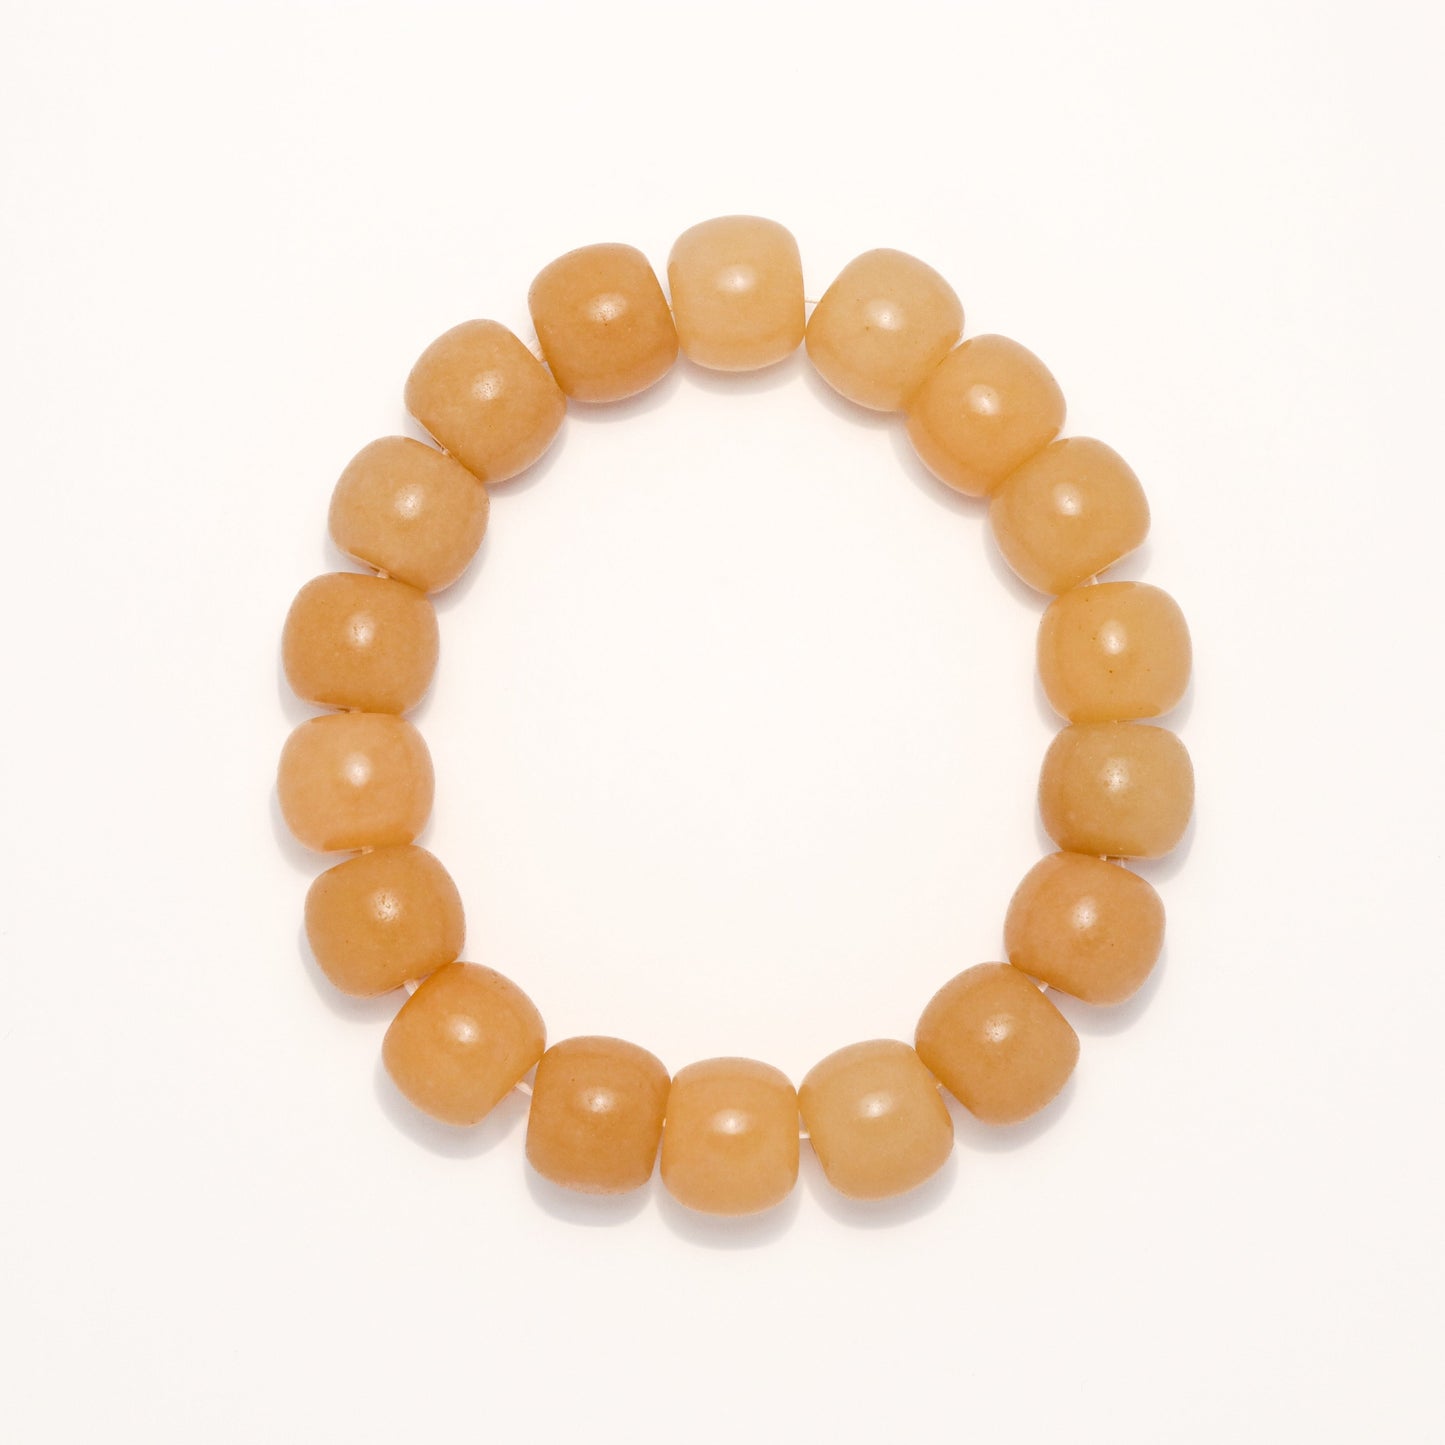 Autumn Tale - She Tai Cui Polished Jade Stone Bracelet